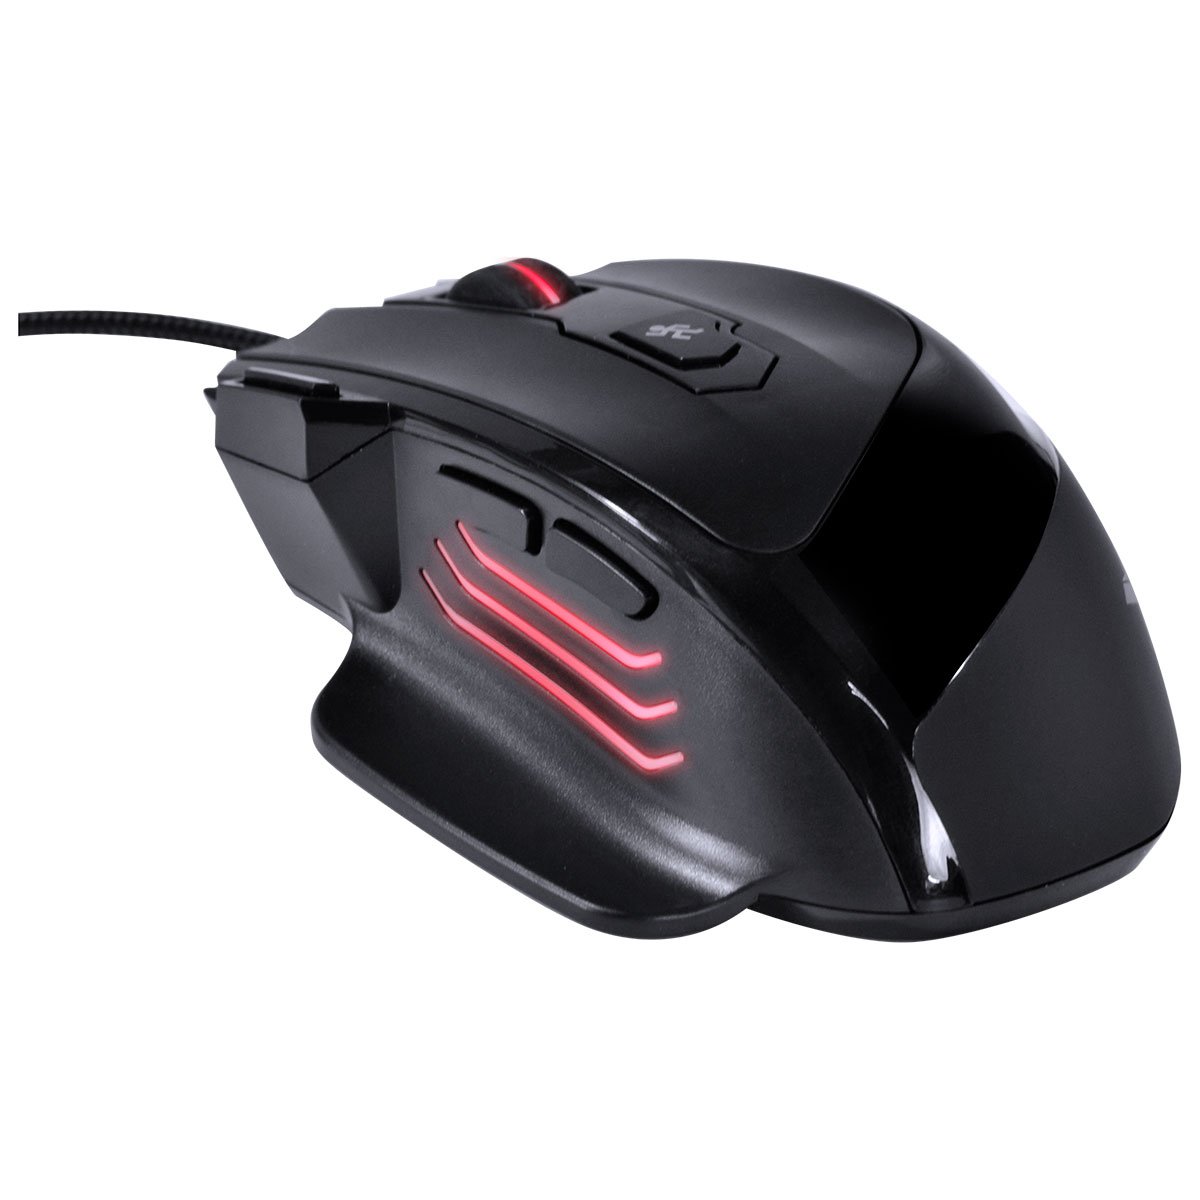 Mouse Gamer Interceptor 7200 Dpi Com Ajuste De Peso Led E Cabo Usb 1.8 Metros Trançado - 4